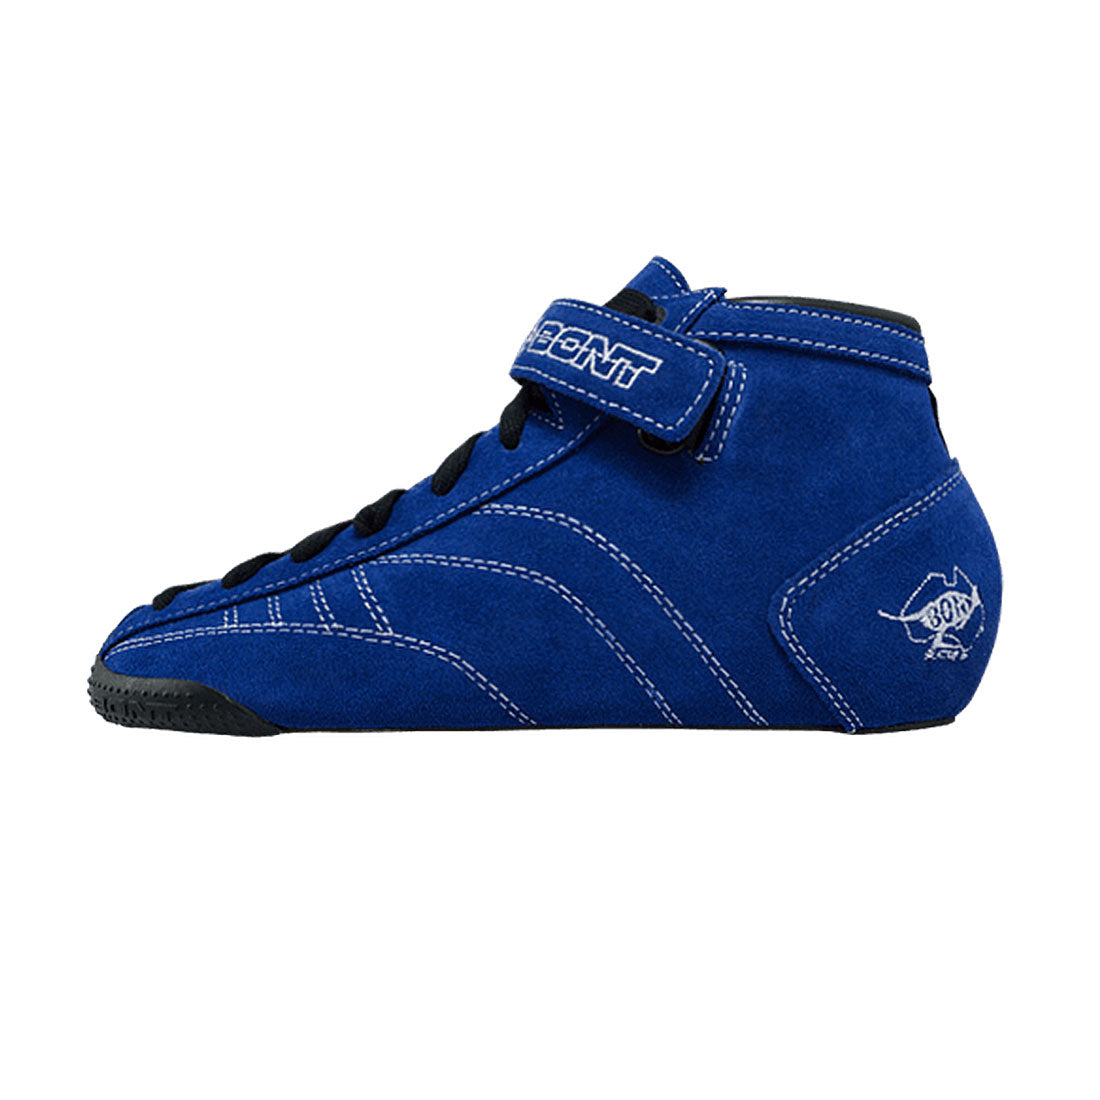 Bont Prostar Suede Boot - Blue Roller Skate Boots